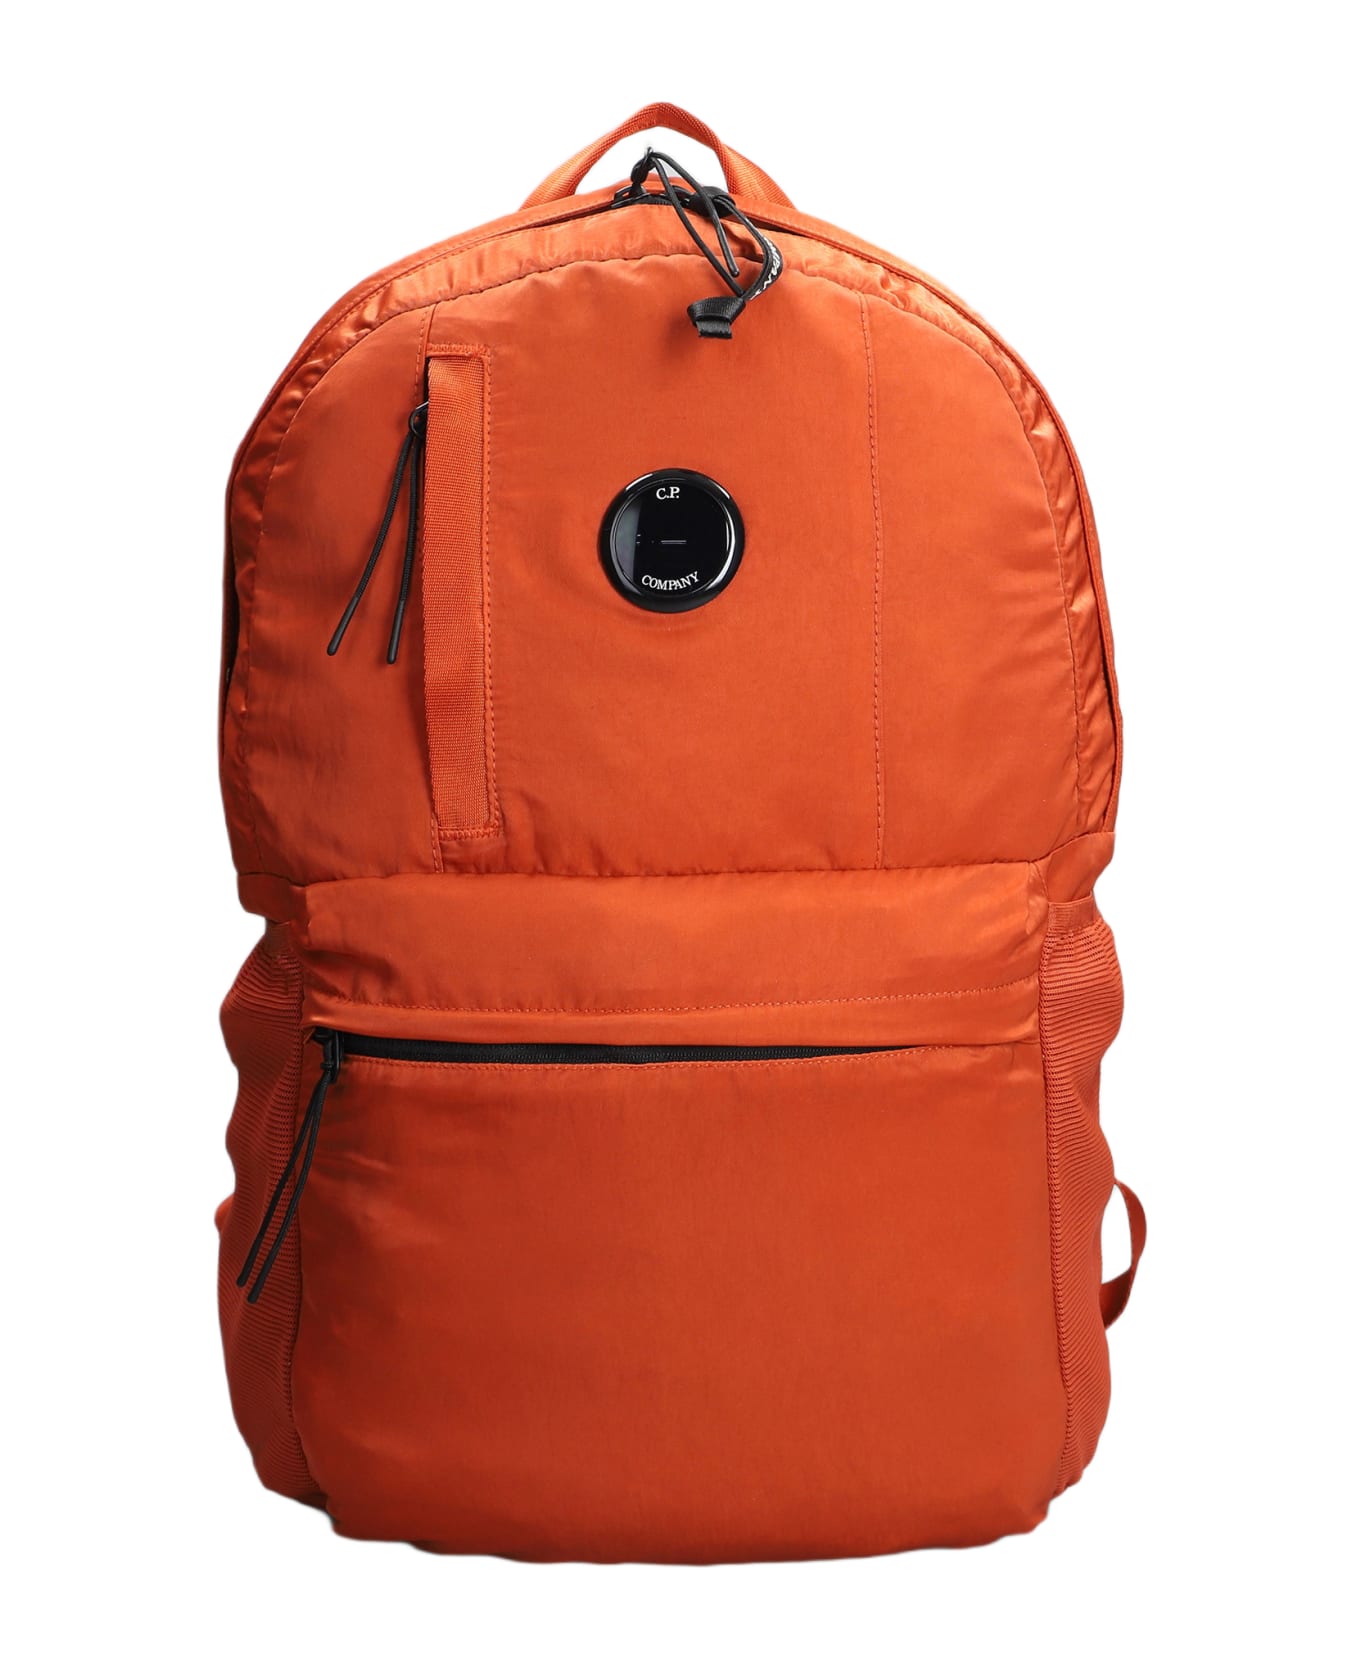 C.P. Company Nylon B Backpack In Orange Polyester - orange